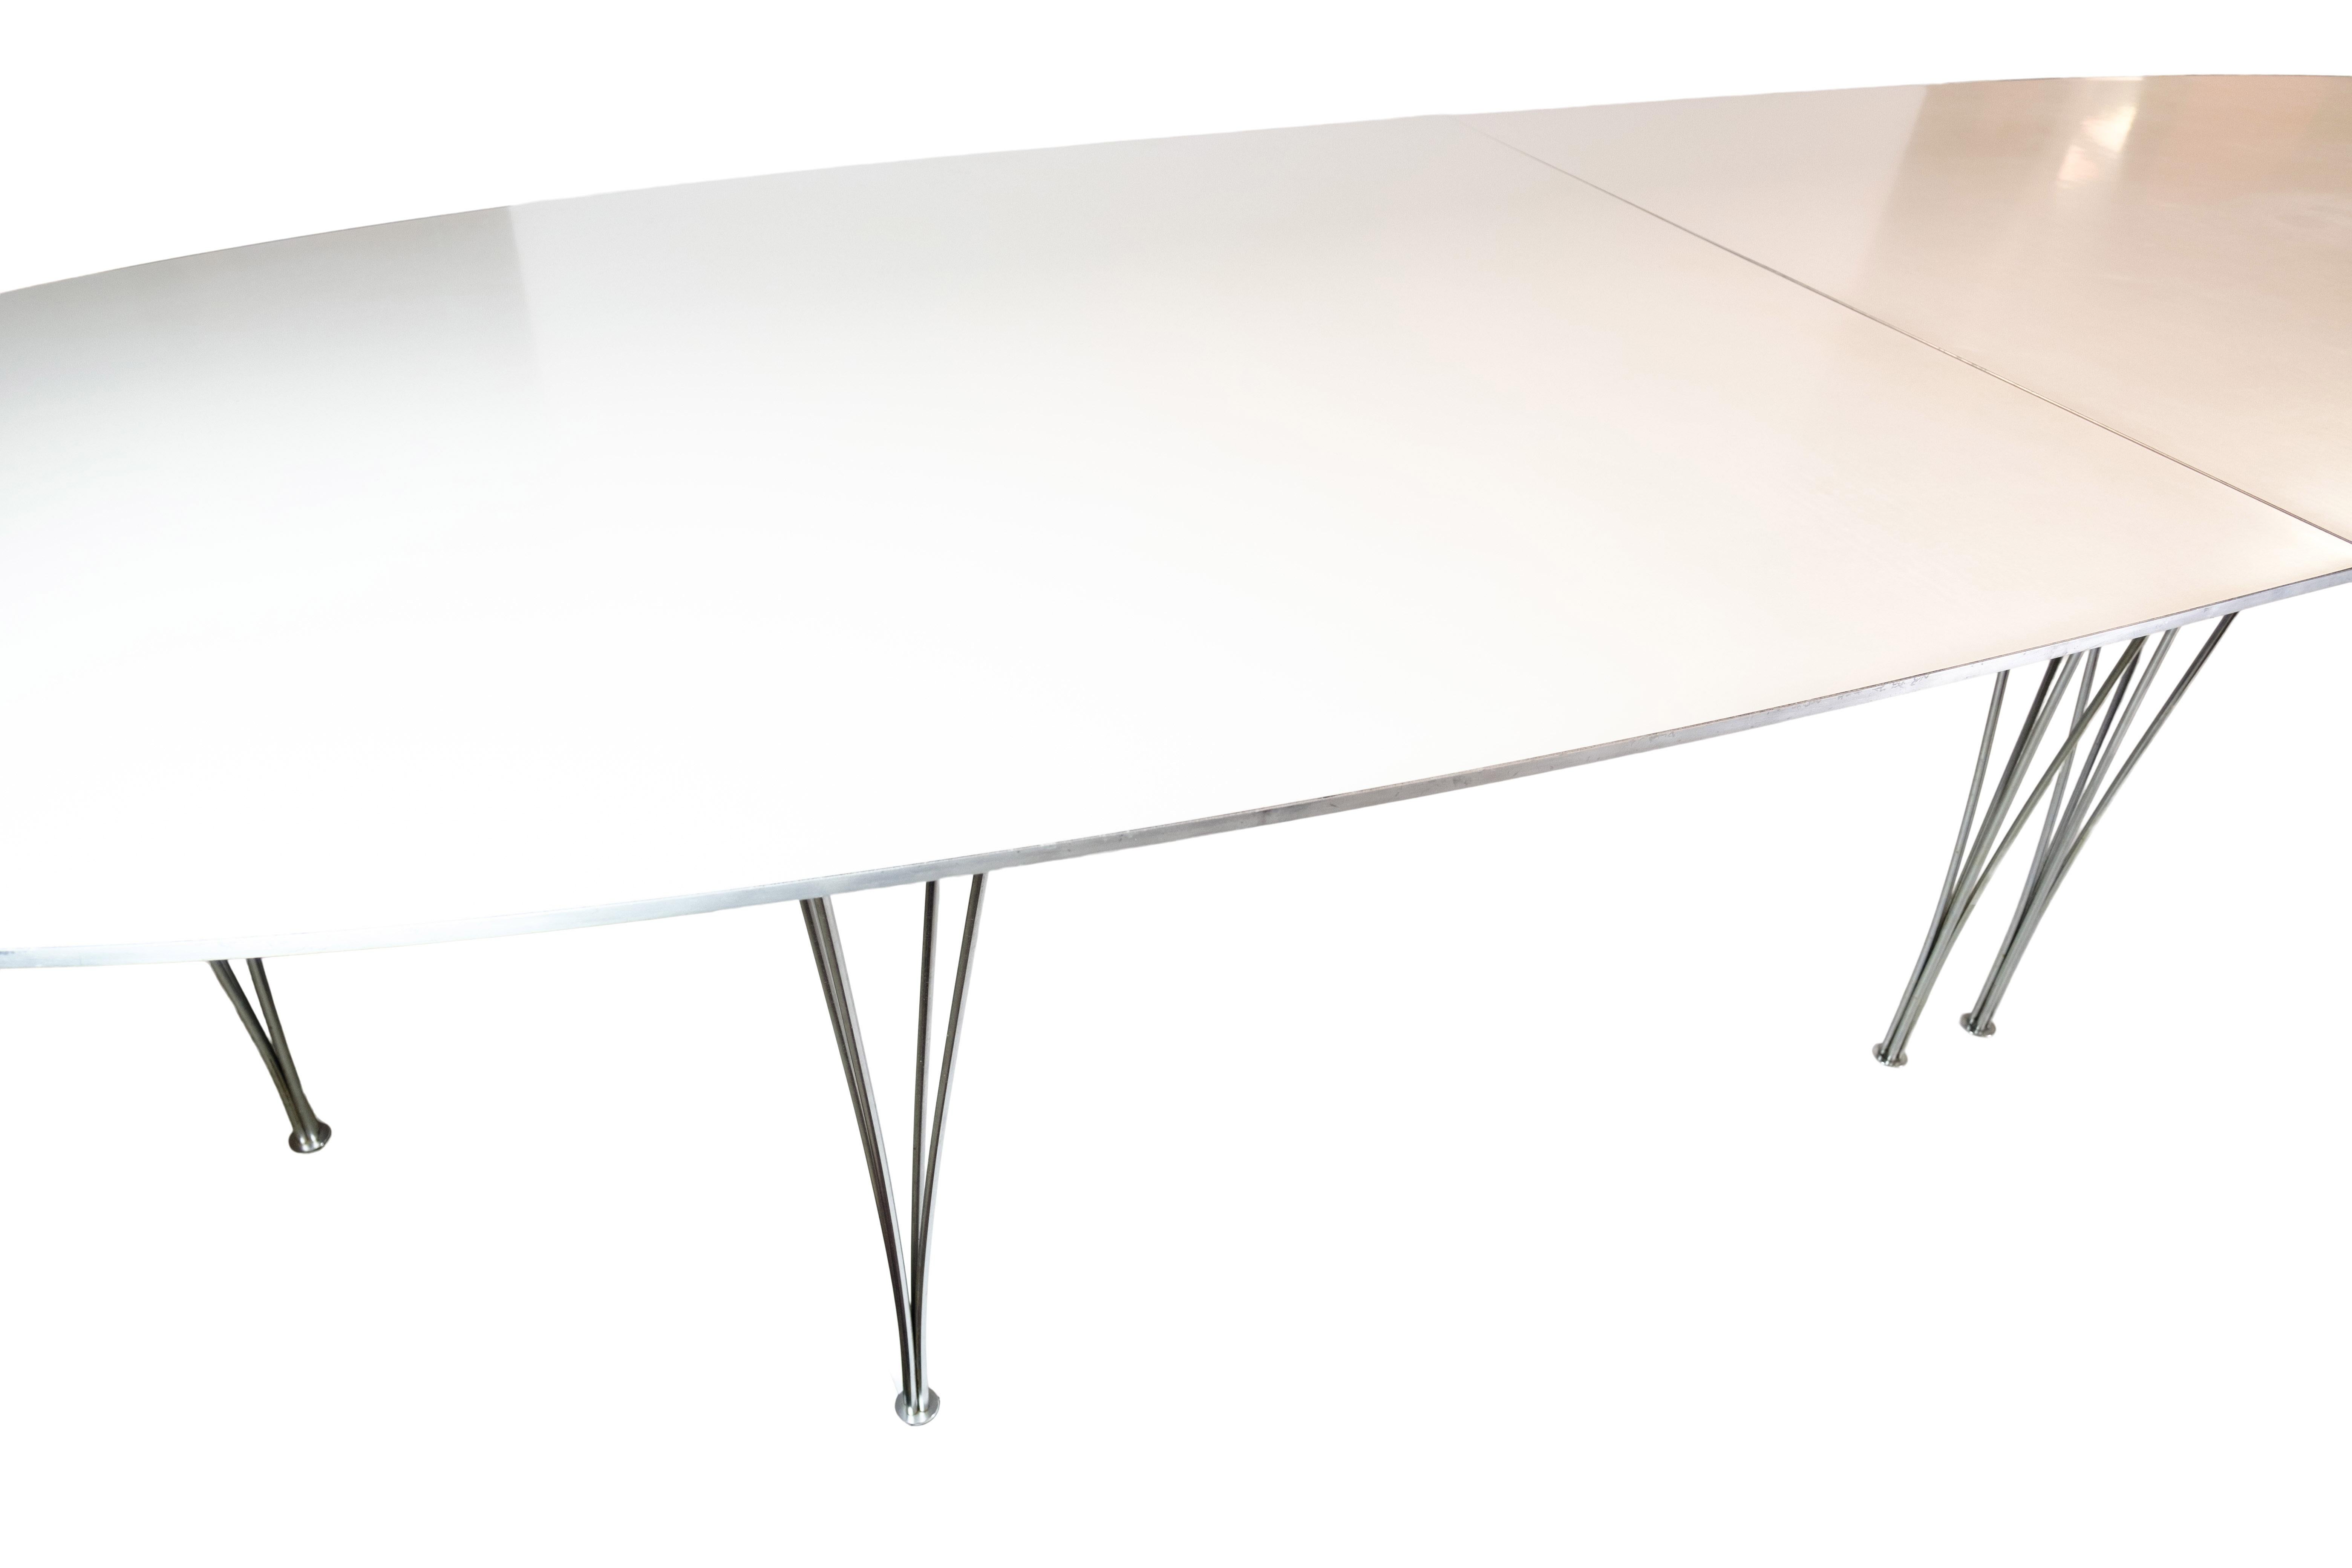  la table de conférence Super Ellipse, créée en 1979 par les célèbres designers Piet Hansen et Bruno Mathsson et fabriquée par Fritz Hansen. Cette table étonnante présente une surface élégante en stratifié blanc avec un bord en aluminium, dégageant